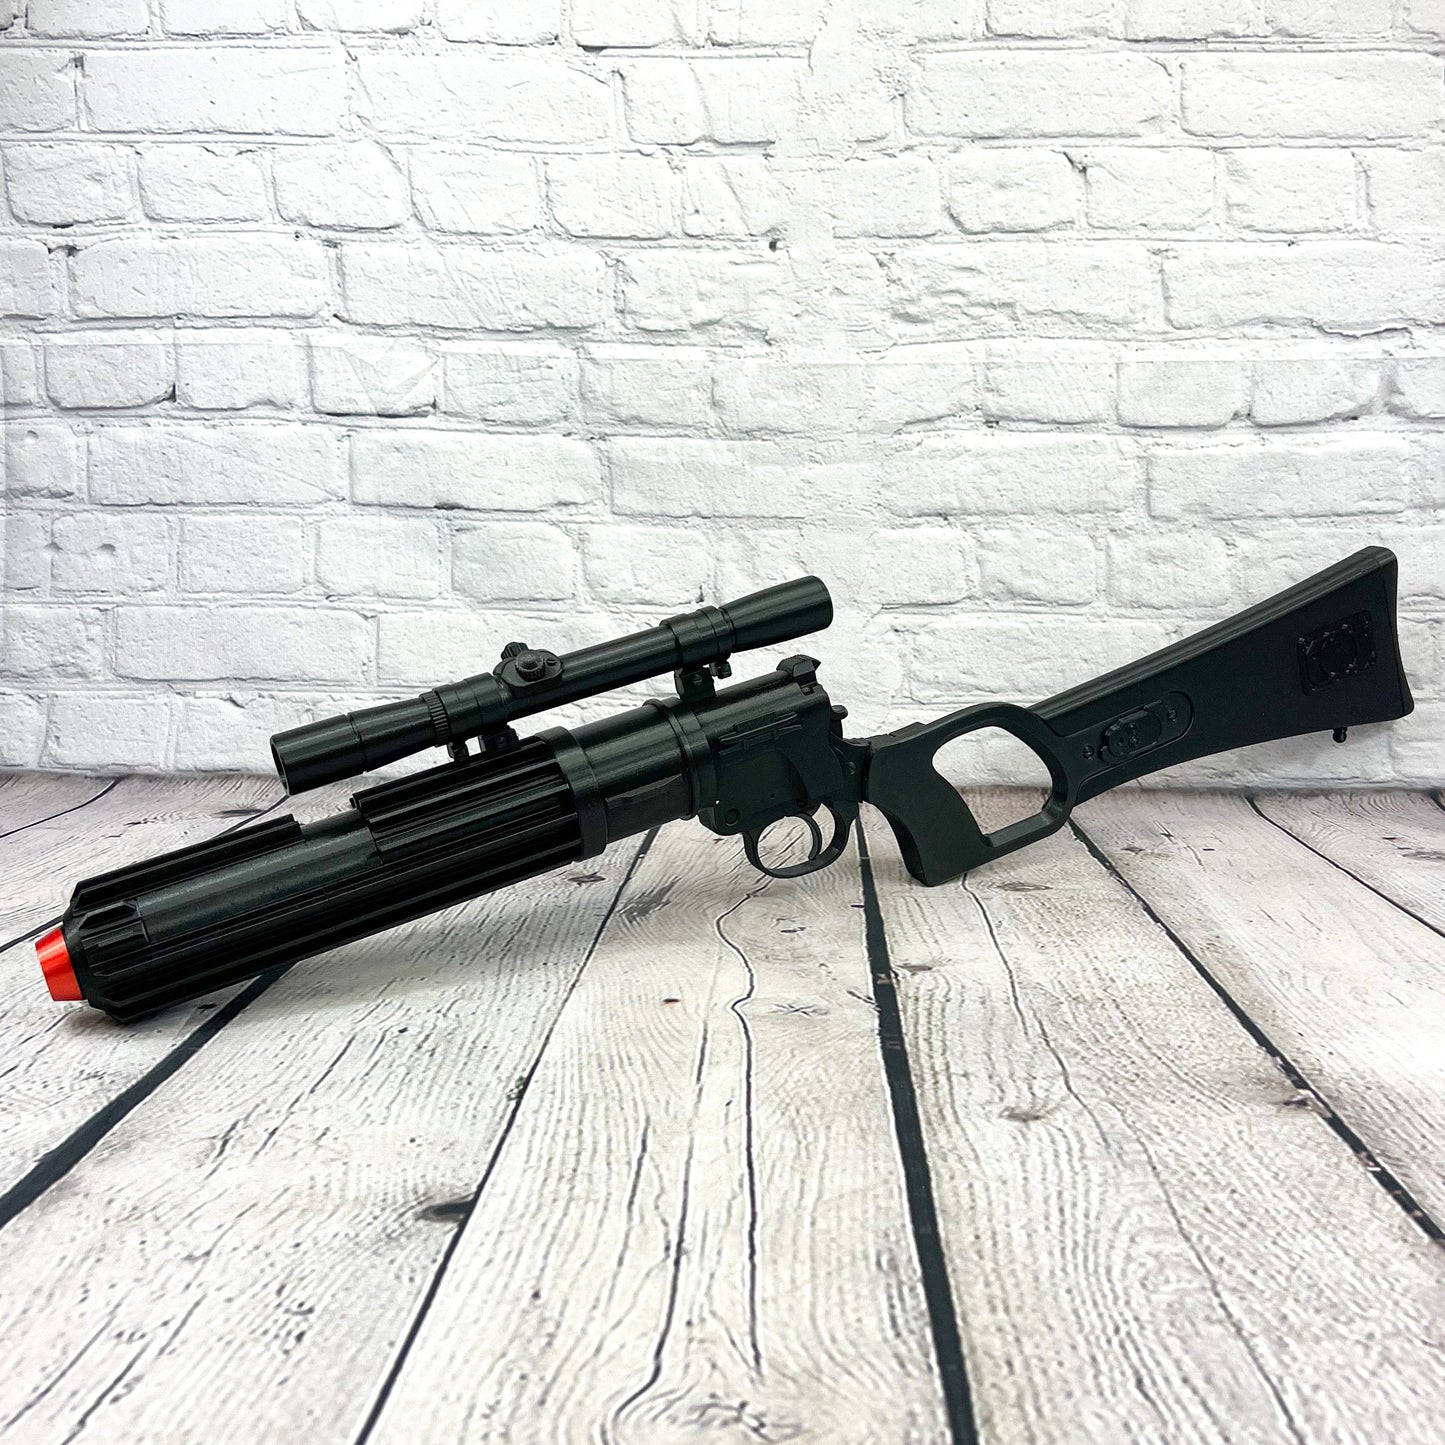 Boba Fett EE-3 Blaster Rifle Gapo Goods